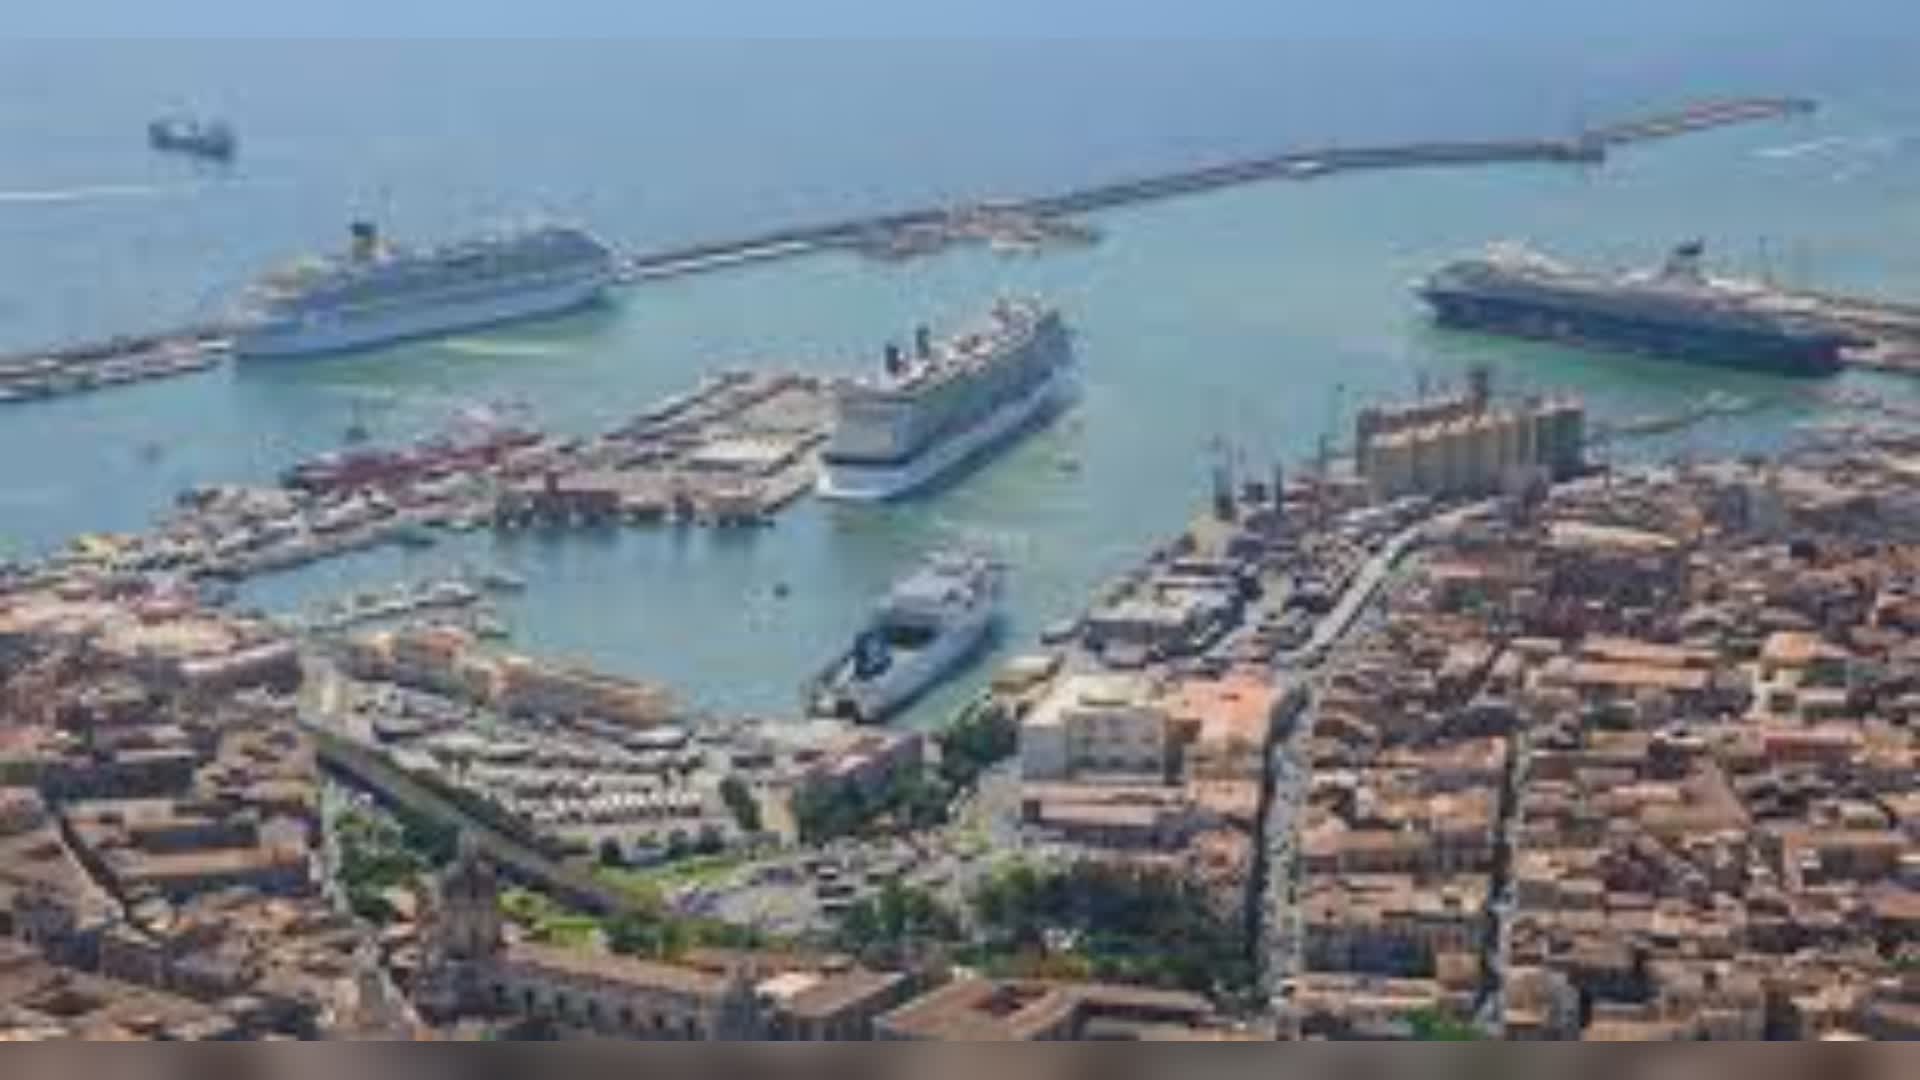 Riaperti i primi 350 metri della grande darsena traghetti del porto di Catania